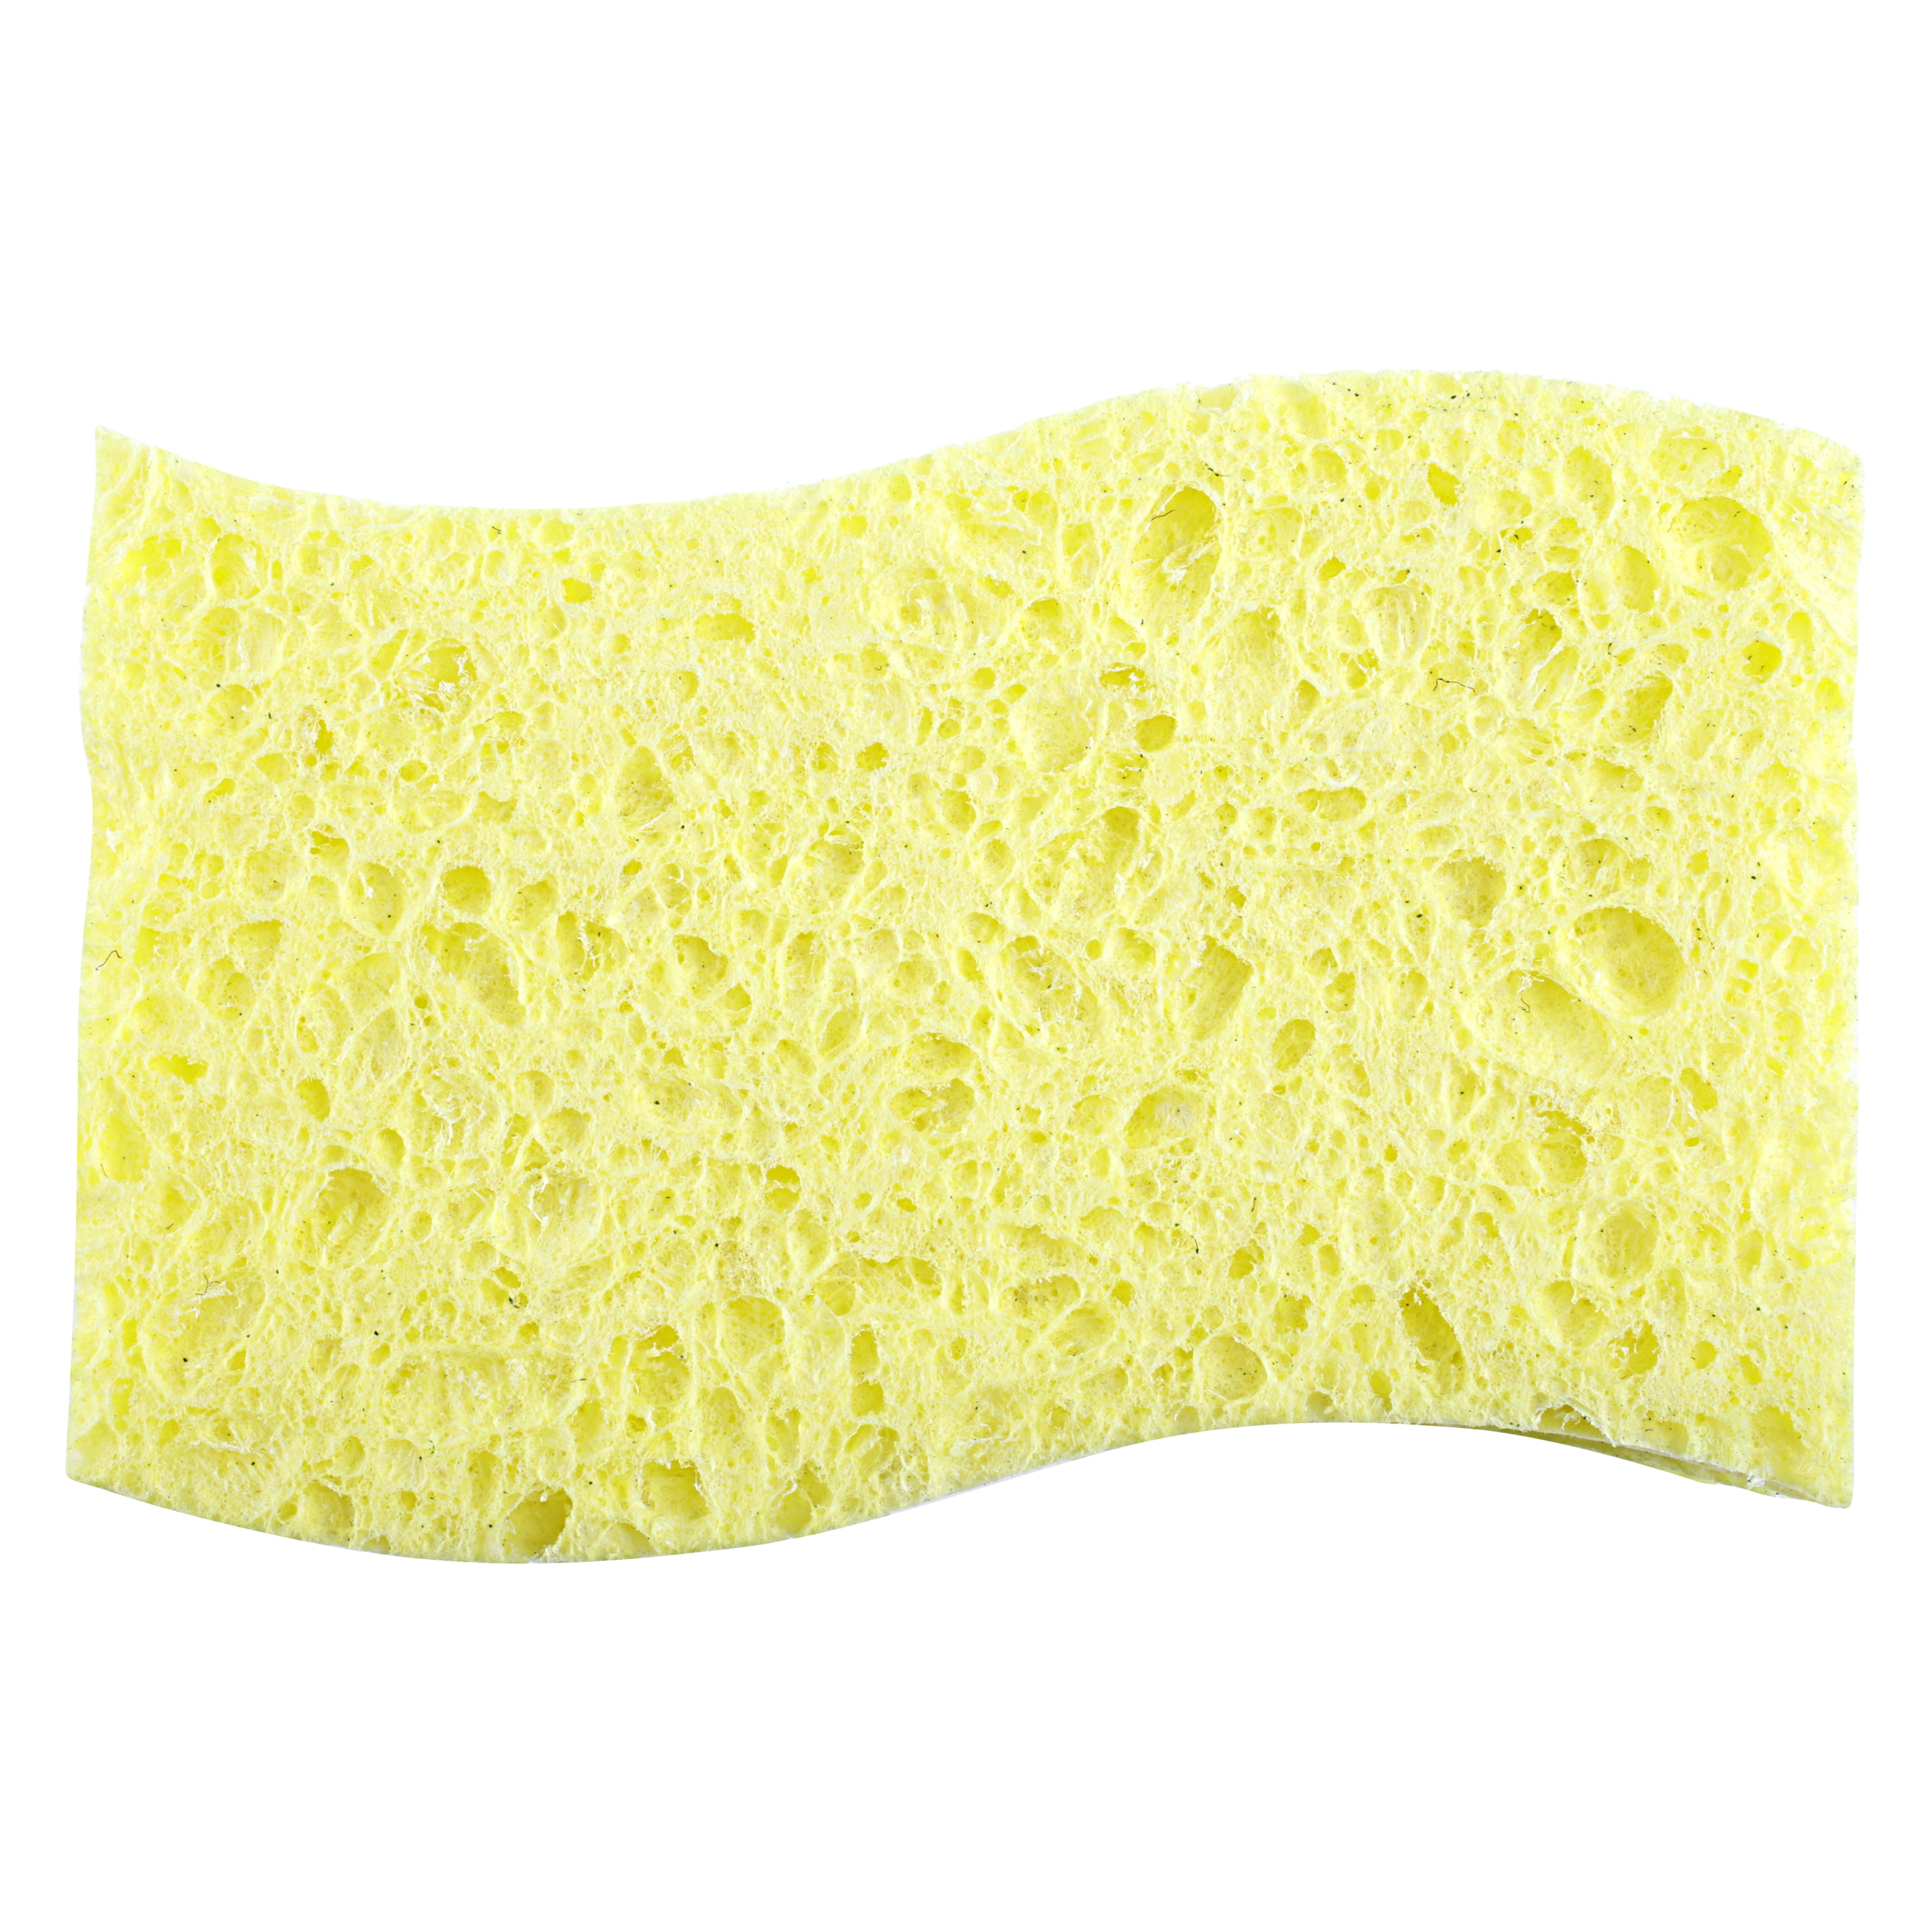 Grand Fusion Peachy Clean Sponge 6pk, each - Kroger